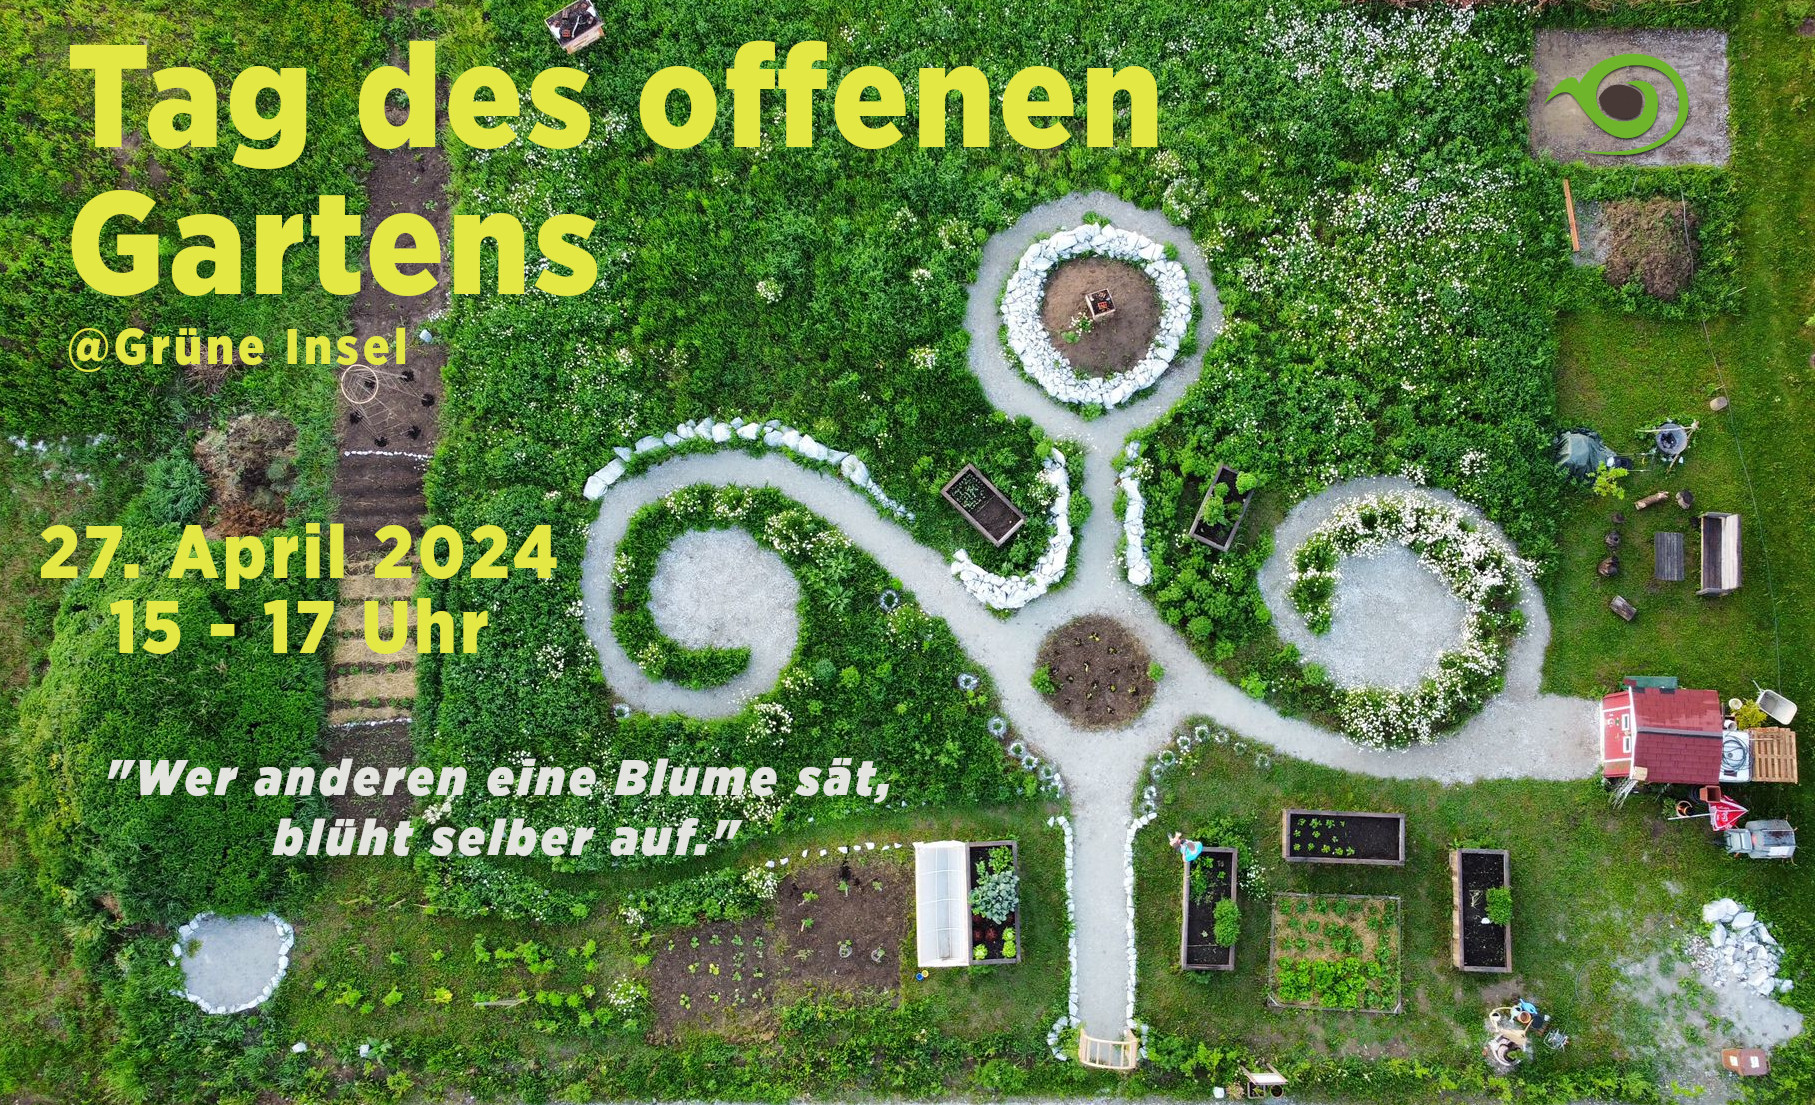 Tag des offenen Gartens 2024